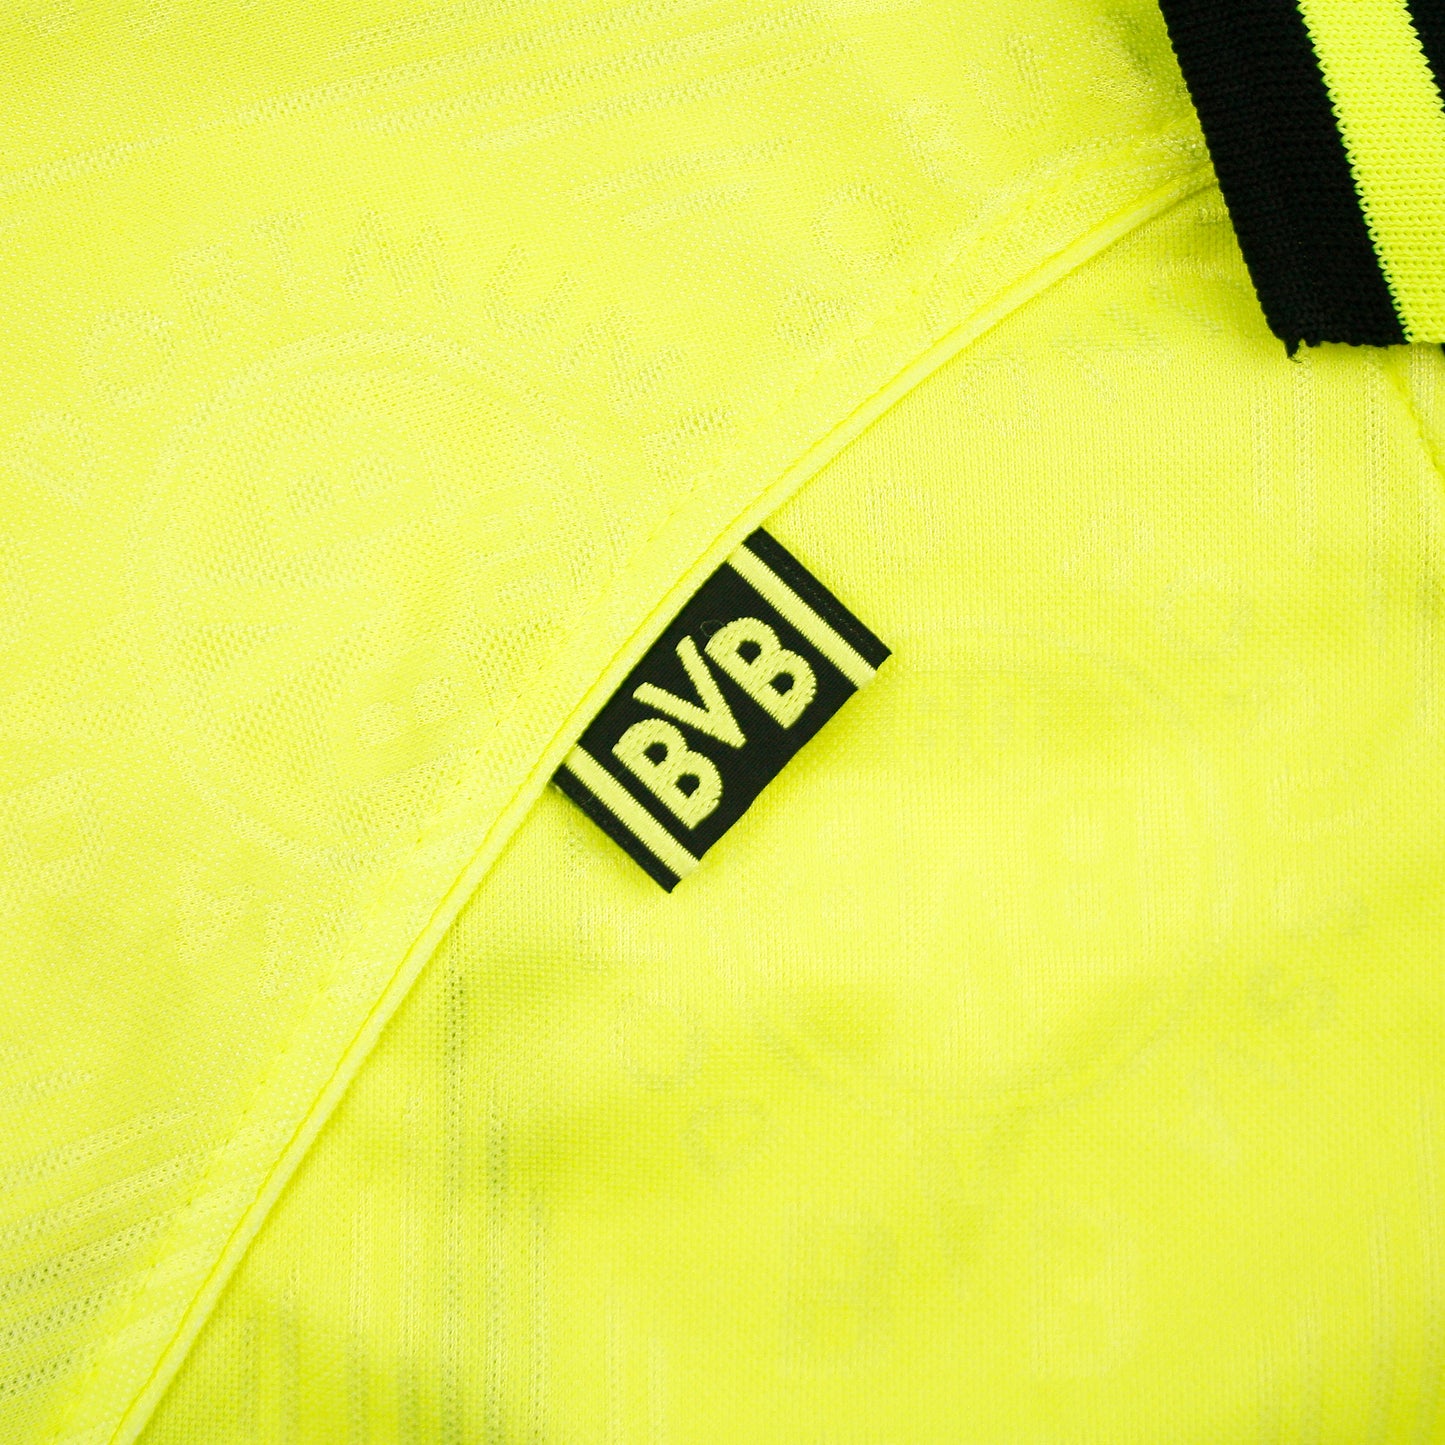 Borussia Dortmund 96/97 • Camiseta Local • M